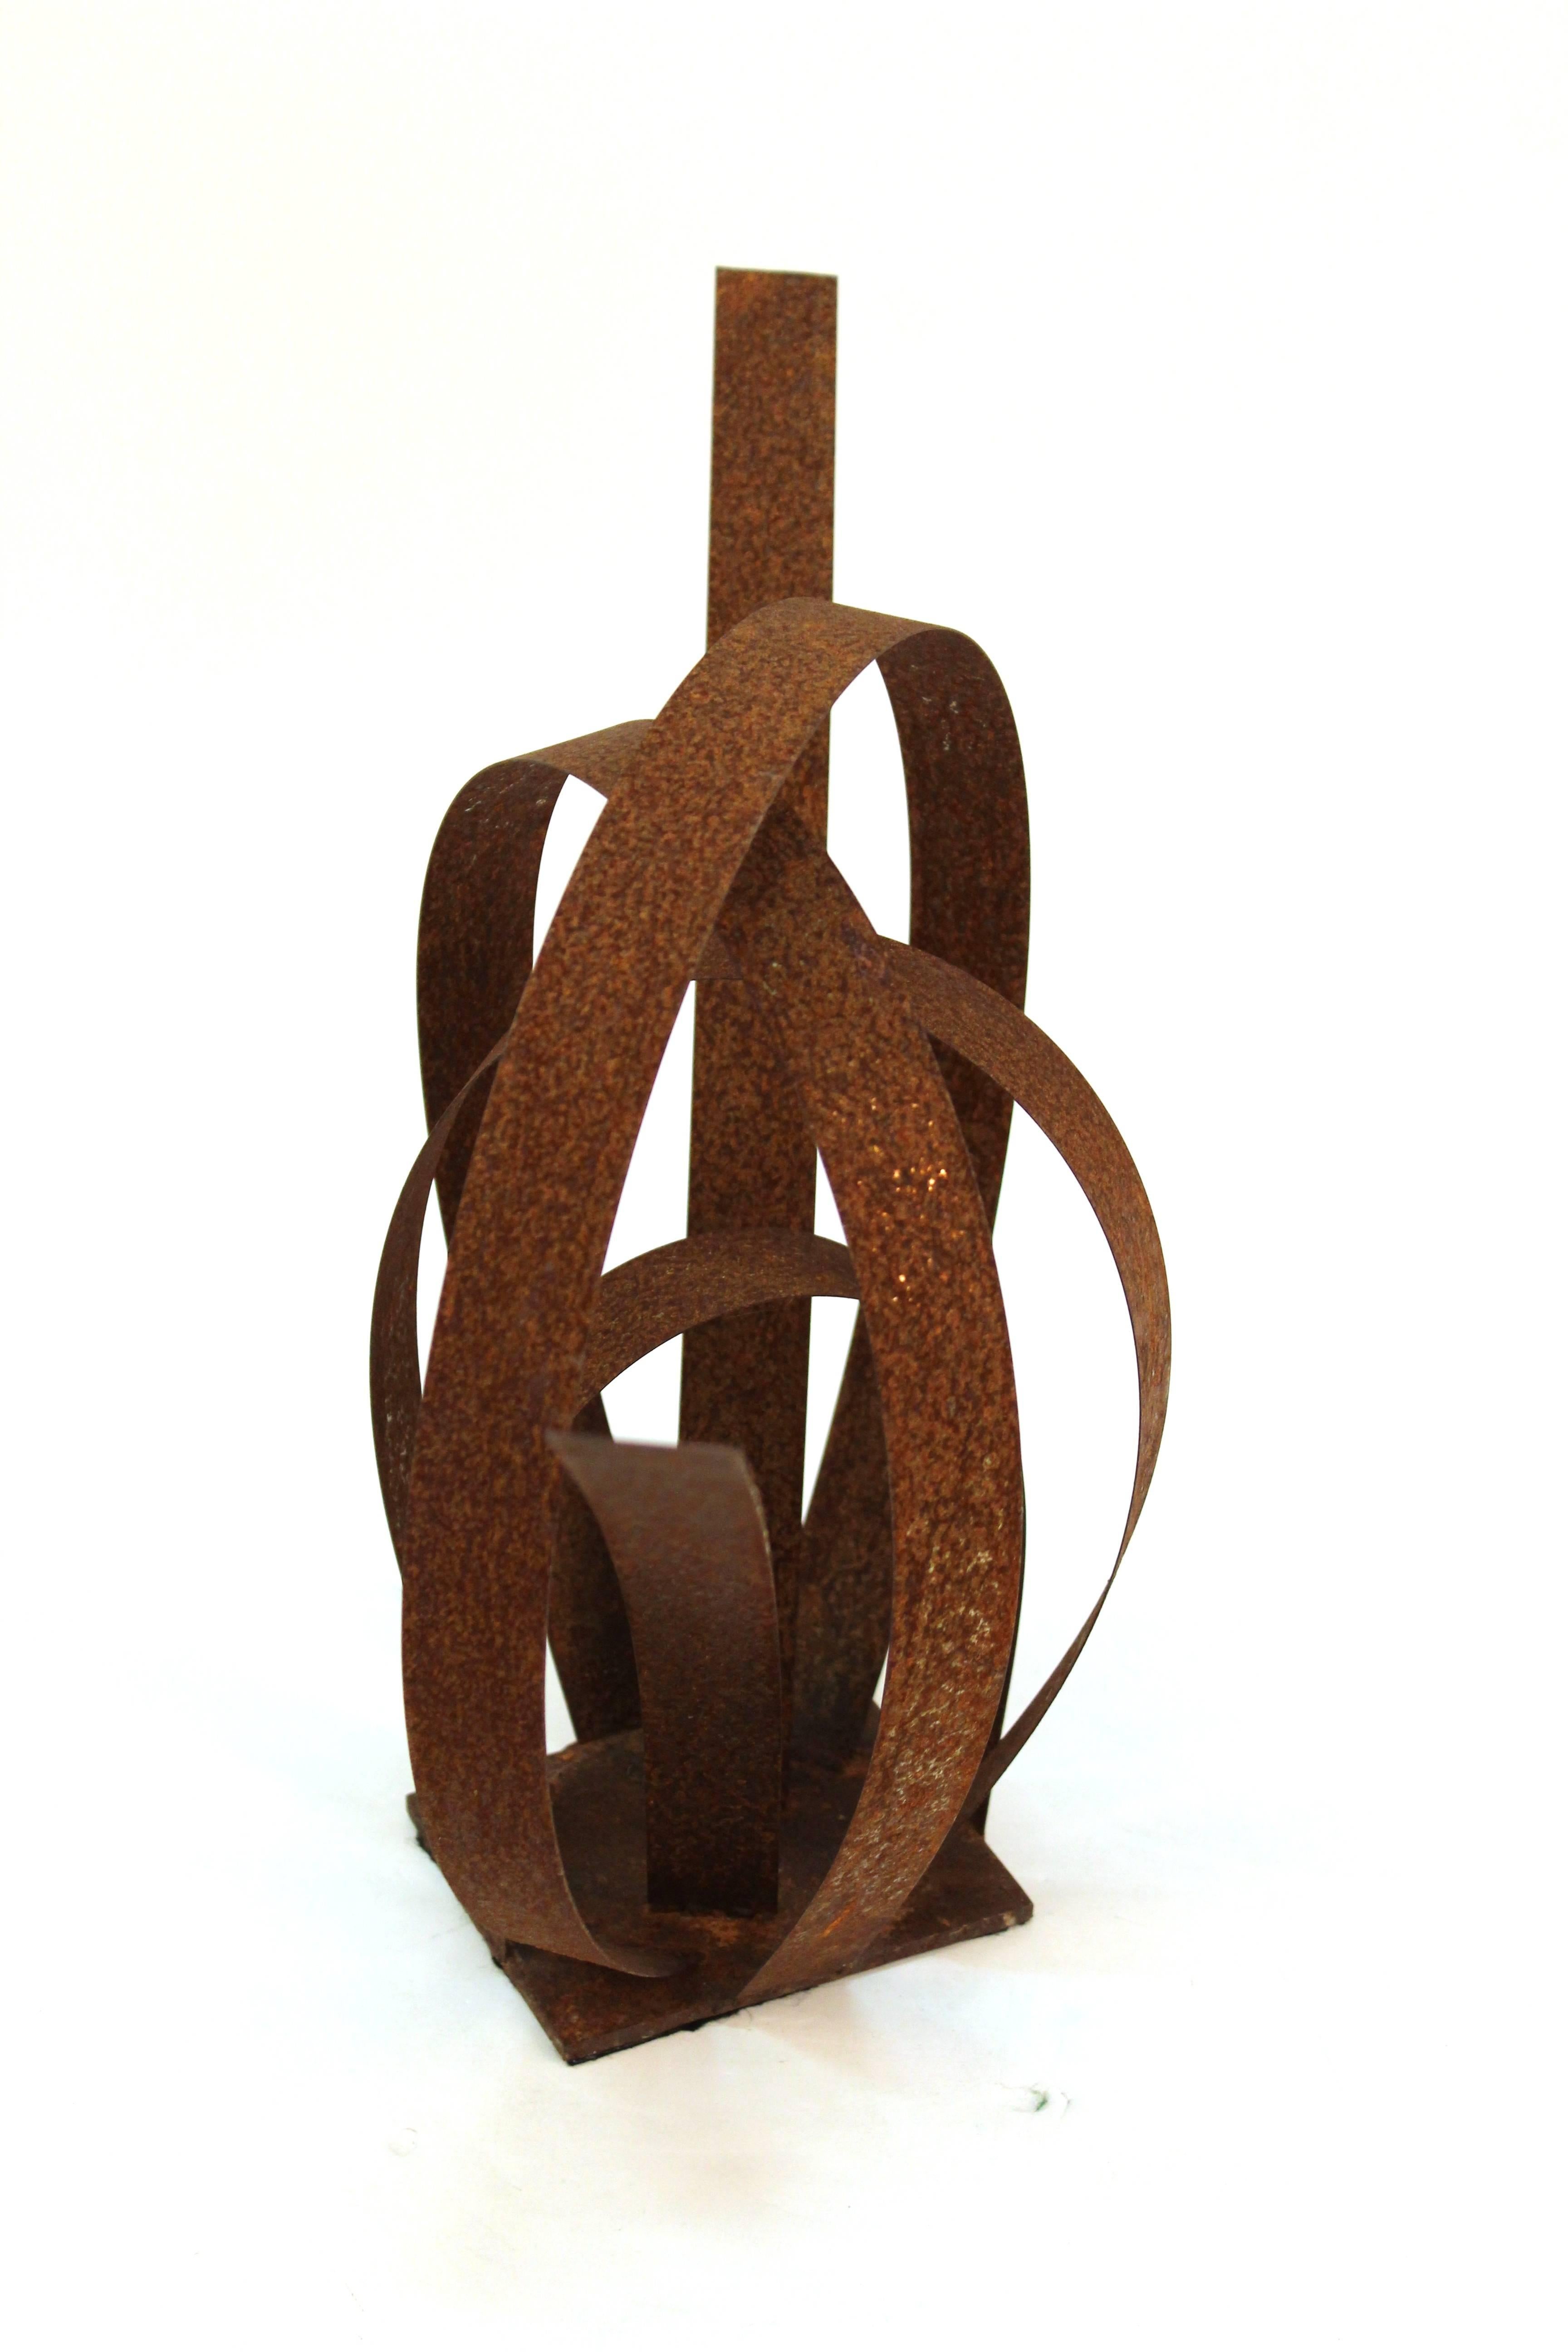 Abstract Loop Metal Sculpture 2